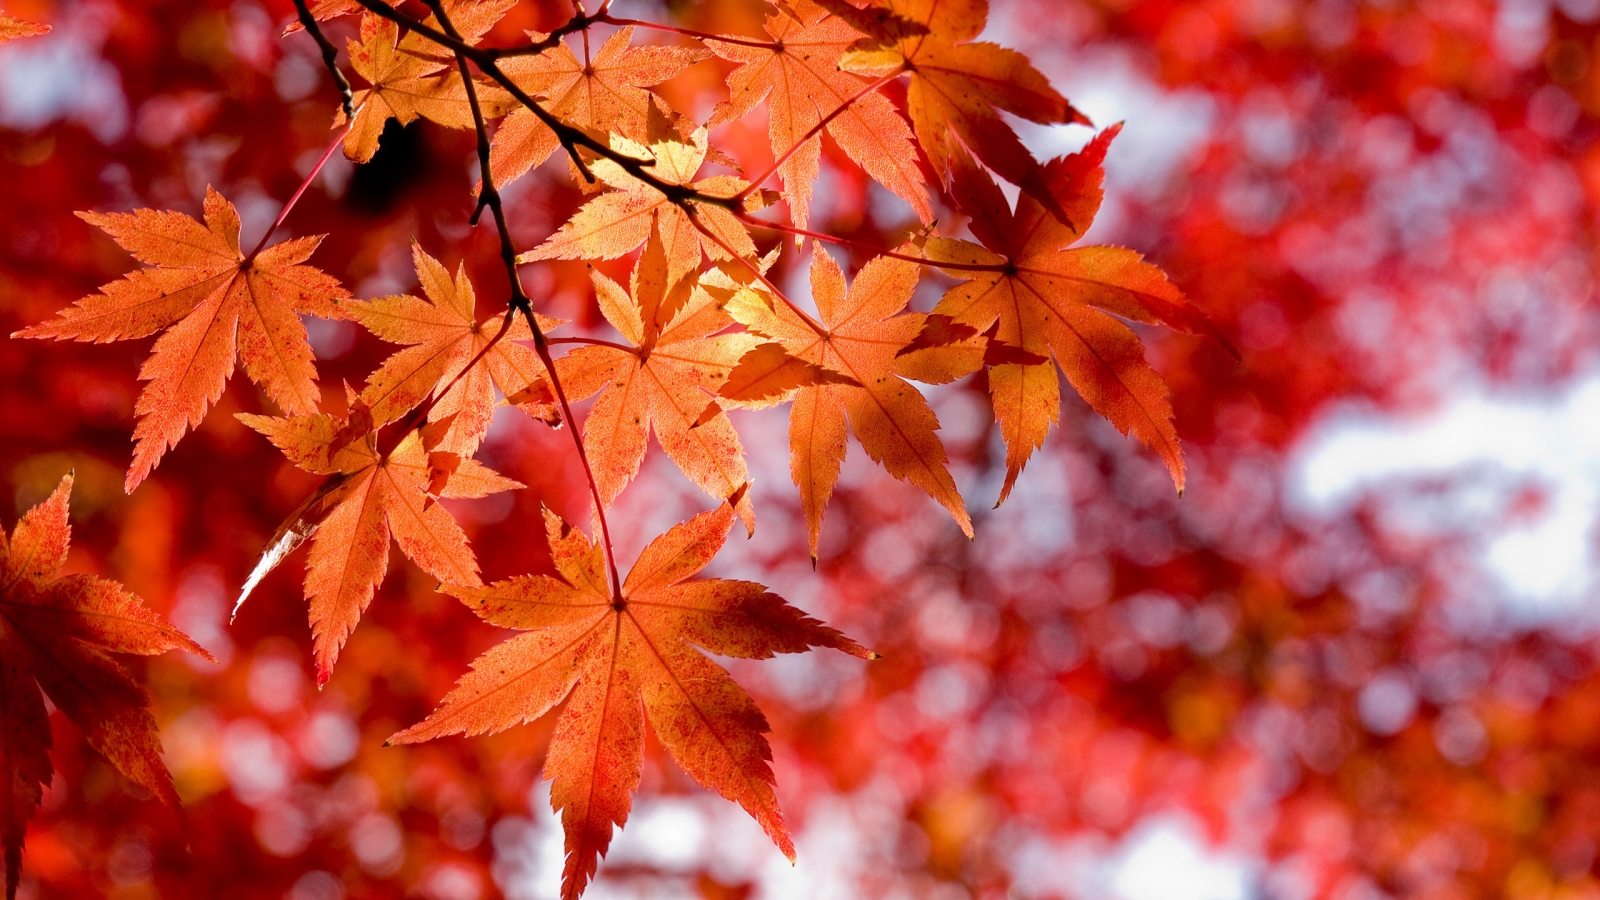 Maple Leaves for 1600 x 900 HDTV resolution